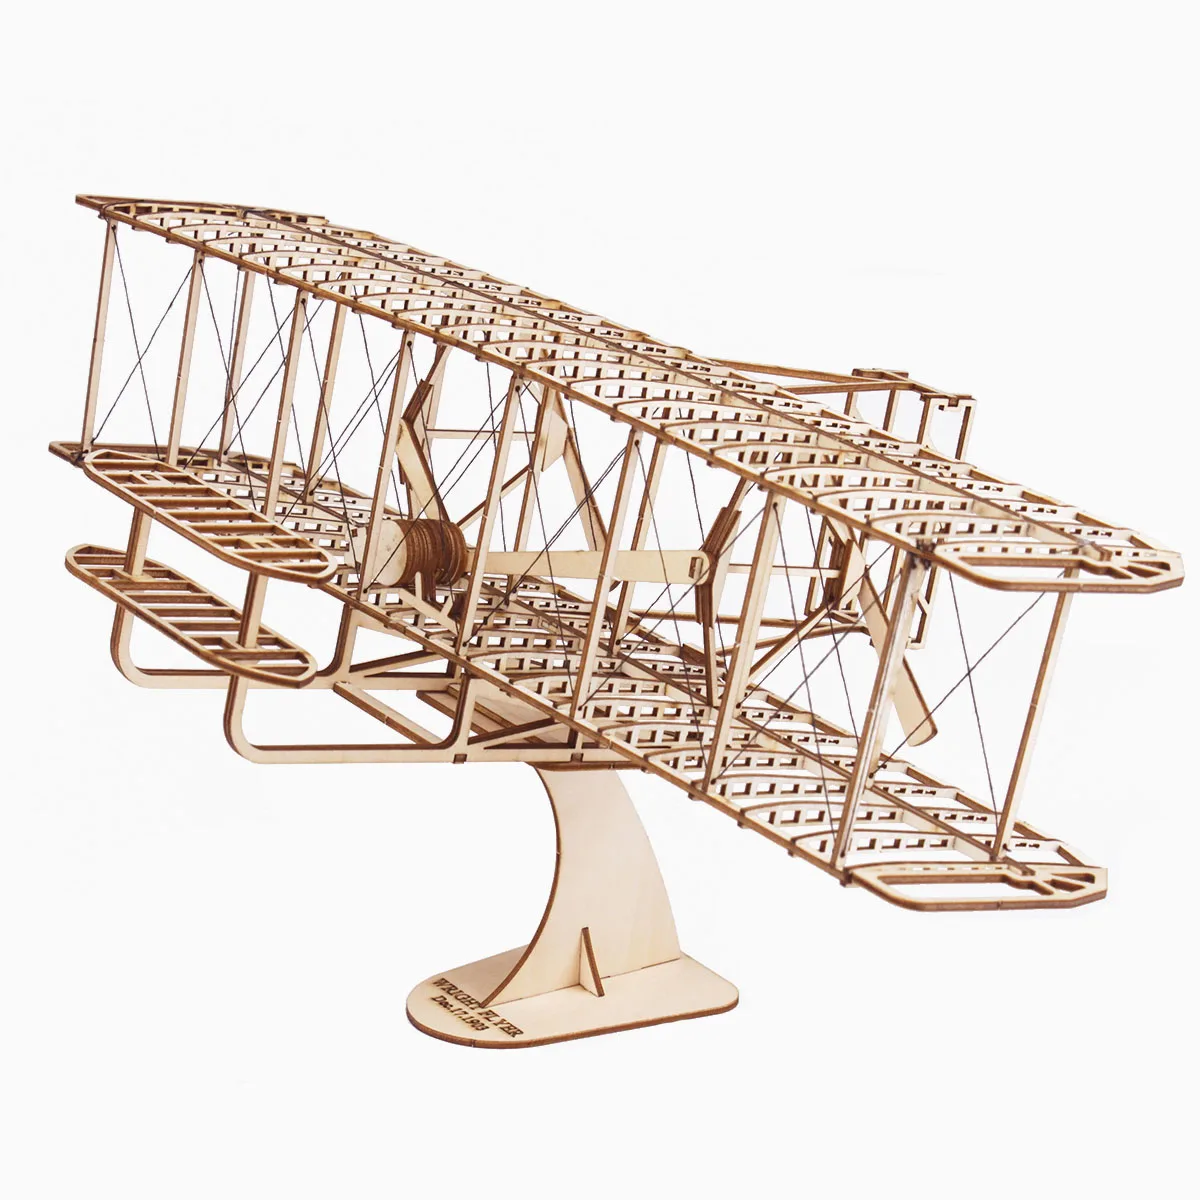 Modelo de avión de madera para niños y adultos, Kit de juguete, colección de construcción, Avión de vuelo, rompecabezas de ensamblaje en 3D